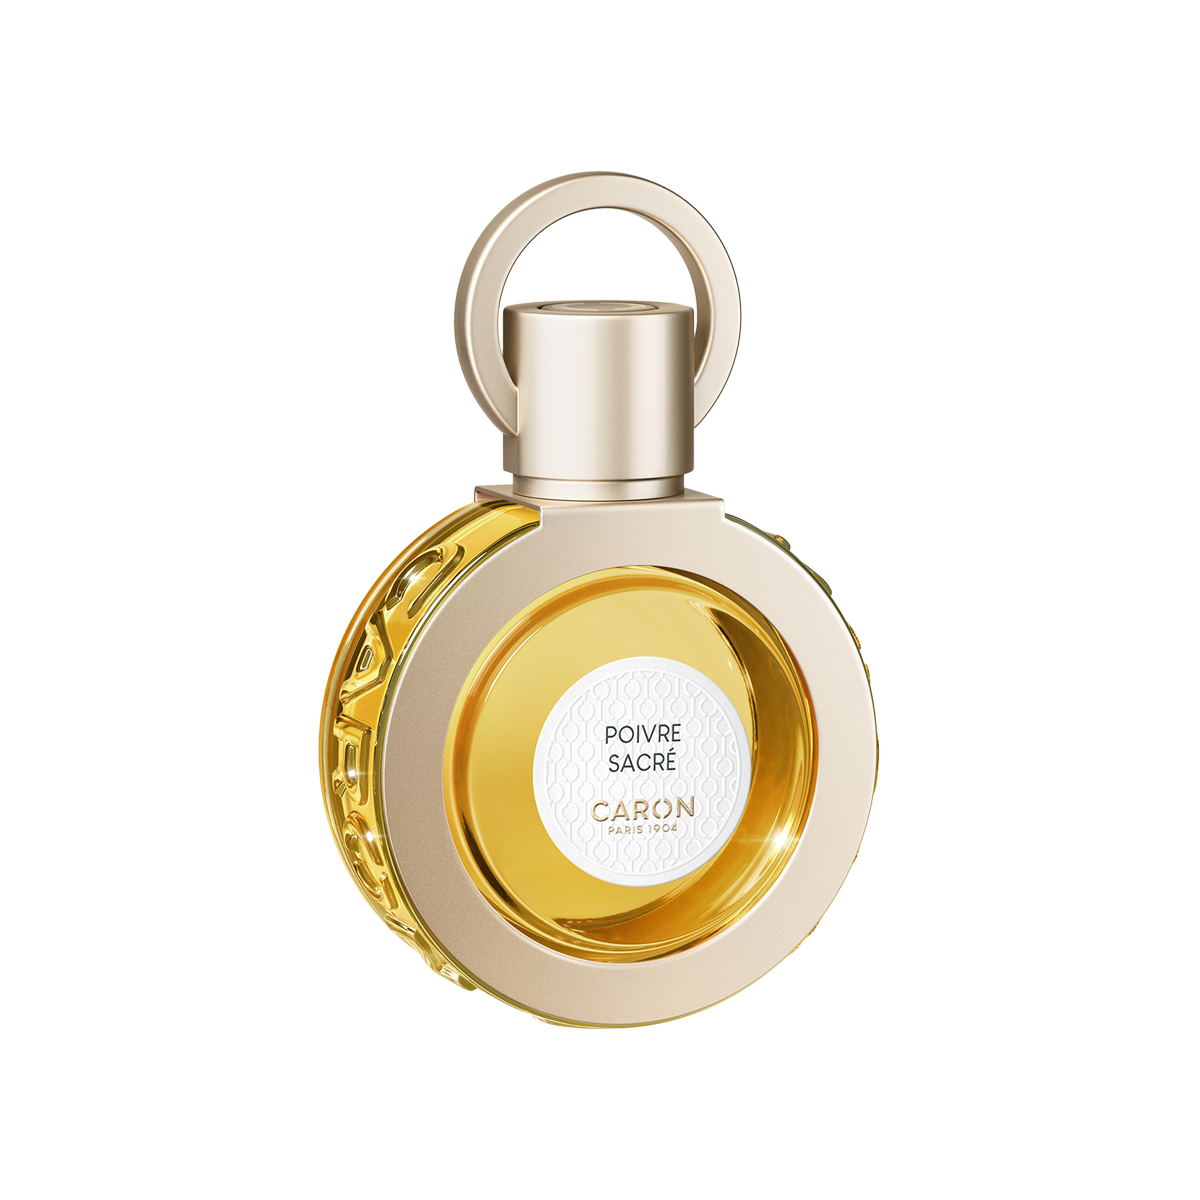 Caron - Poivre Sacre Eau de Parfum